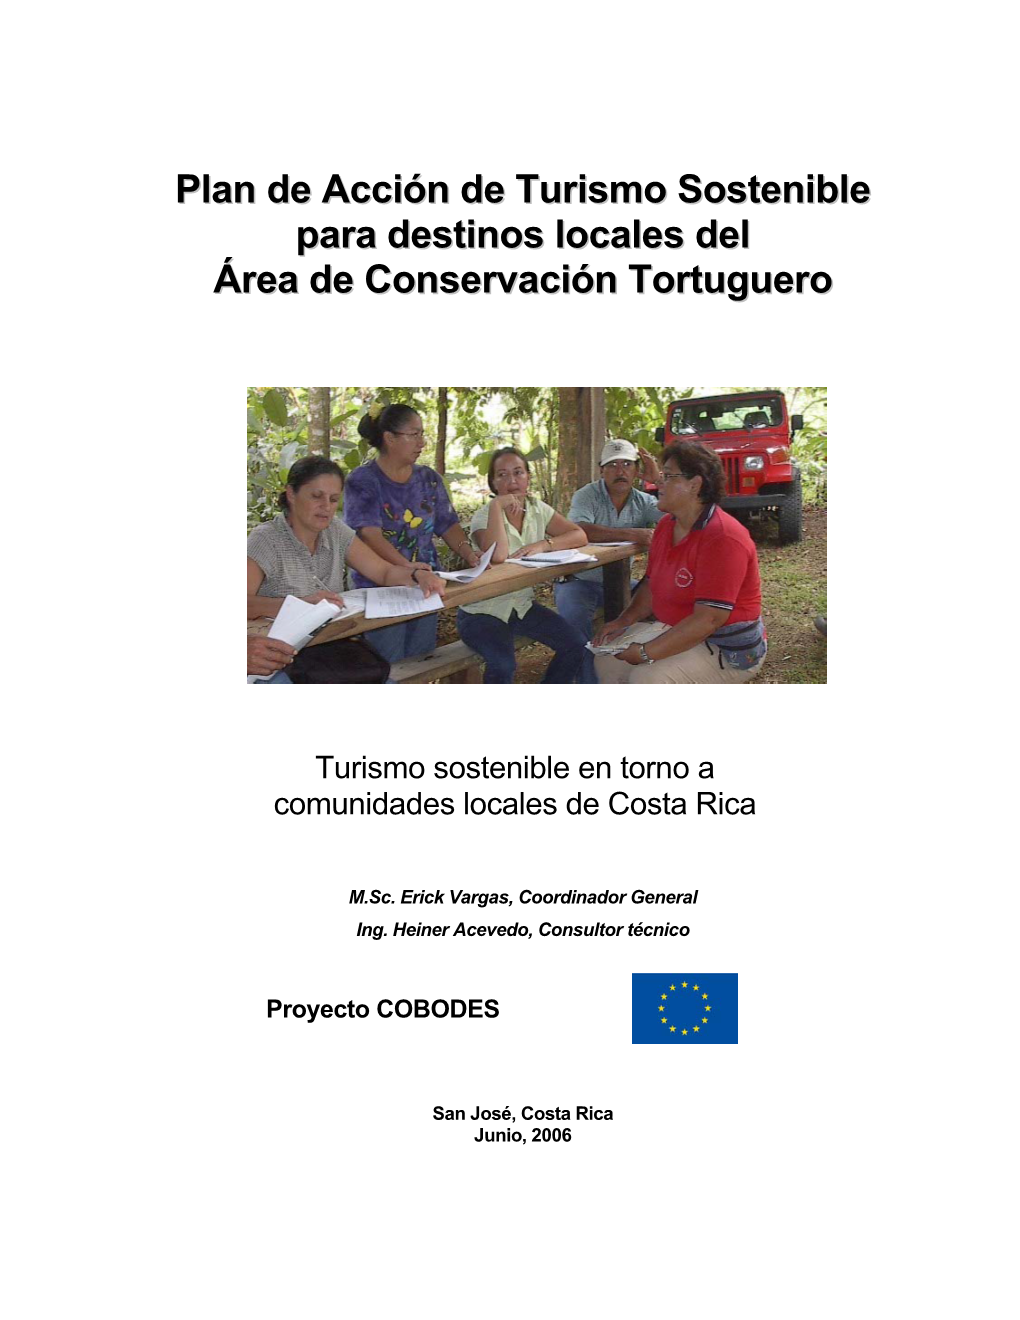 Plan De Acción De Turismo Sostenible Para Destinos Locales Del Área De Conservación Tortuguero